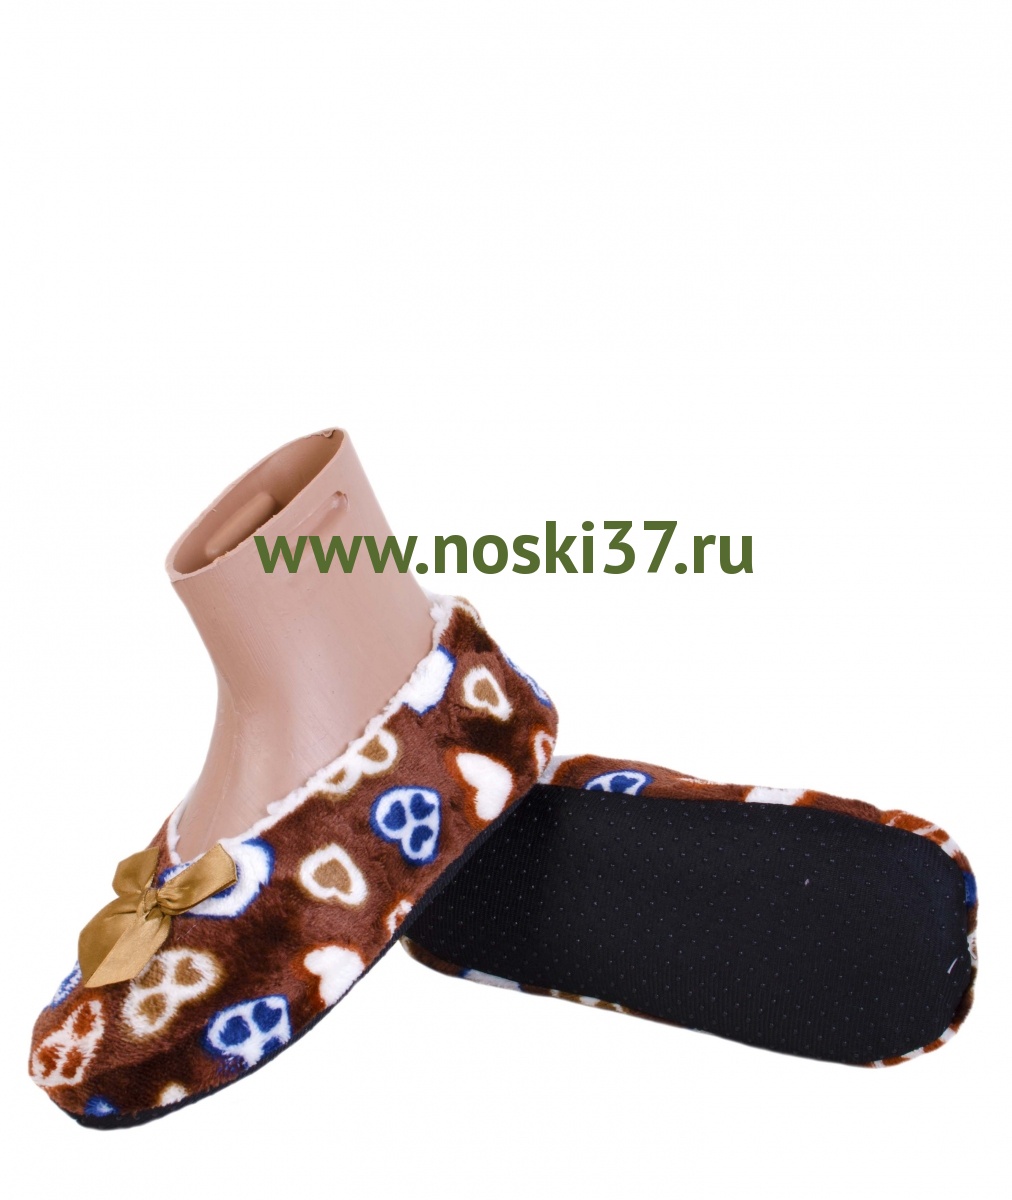 Носки- тапки женские "Socks" № 15-20 купить оптом и мелким оптом, низкие цены от магазина Комфорт(noski37) для всей семьи с доставка по всей России от производителя.